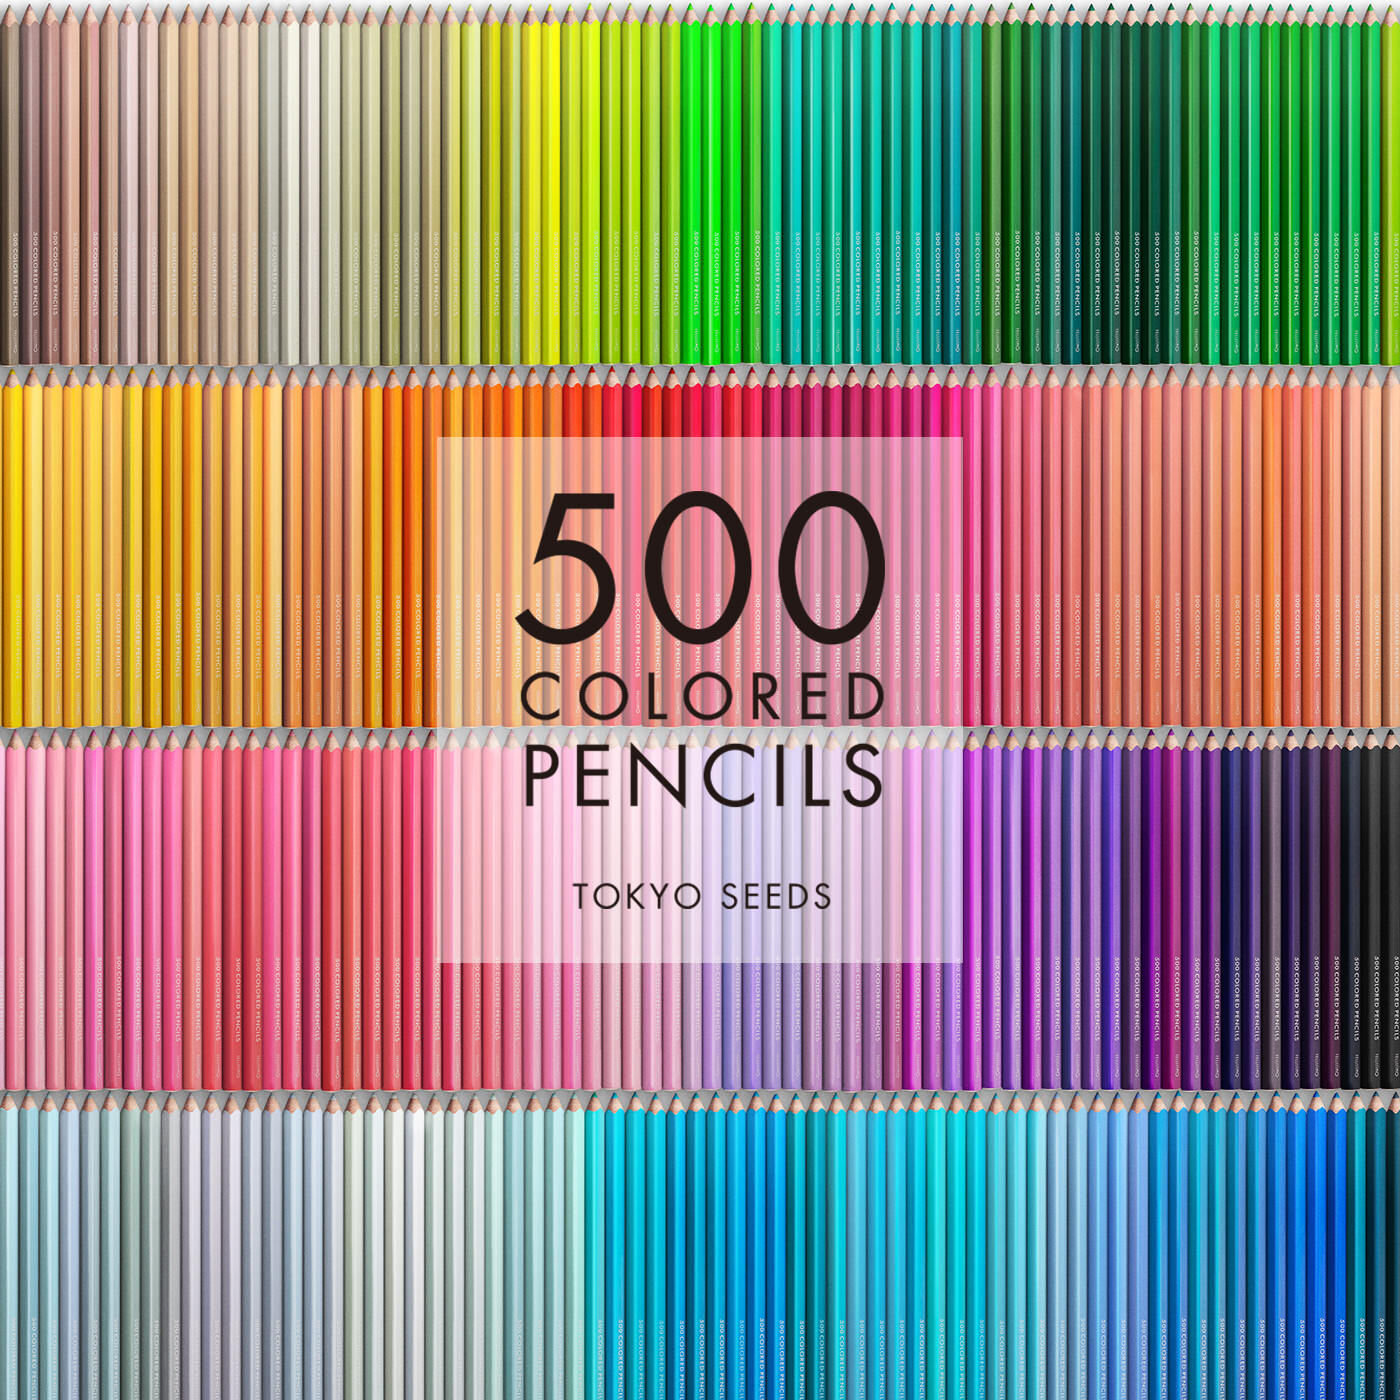 Real Stock|【130/500 CUSTARD RICE】500色の色えんぴつ TOKYO SEEDS|1992年、世界初の「500色」という膨大な色数の色えんぴつが誕生して以来、その販売数は発売当初から合わせると、世界55ヵ国10万セット以上。今回、メイド・イン・ジャパンにこだわり、すべてが新しく生まれ変わって登場しました。